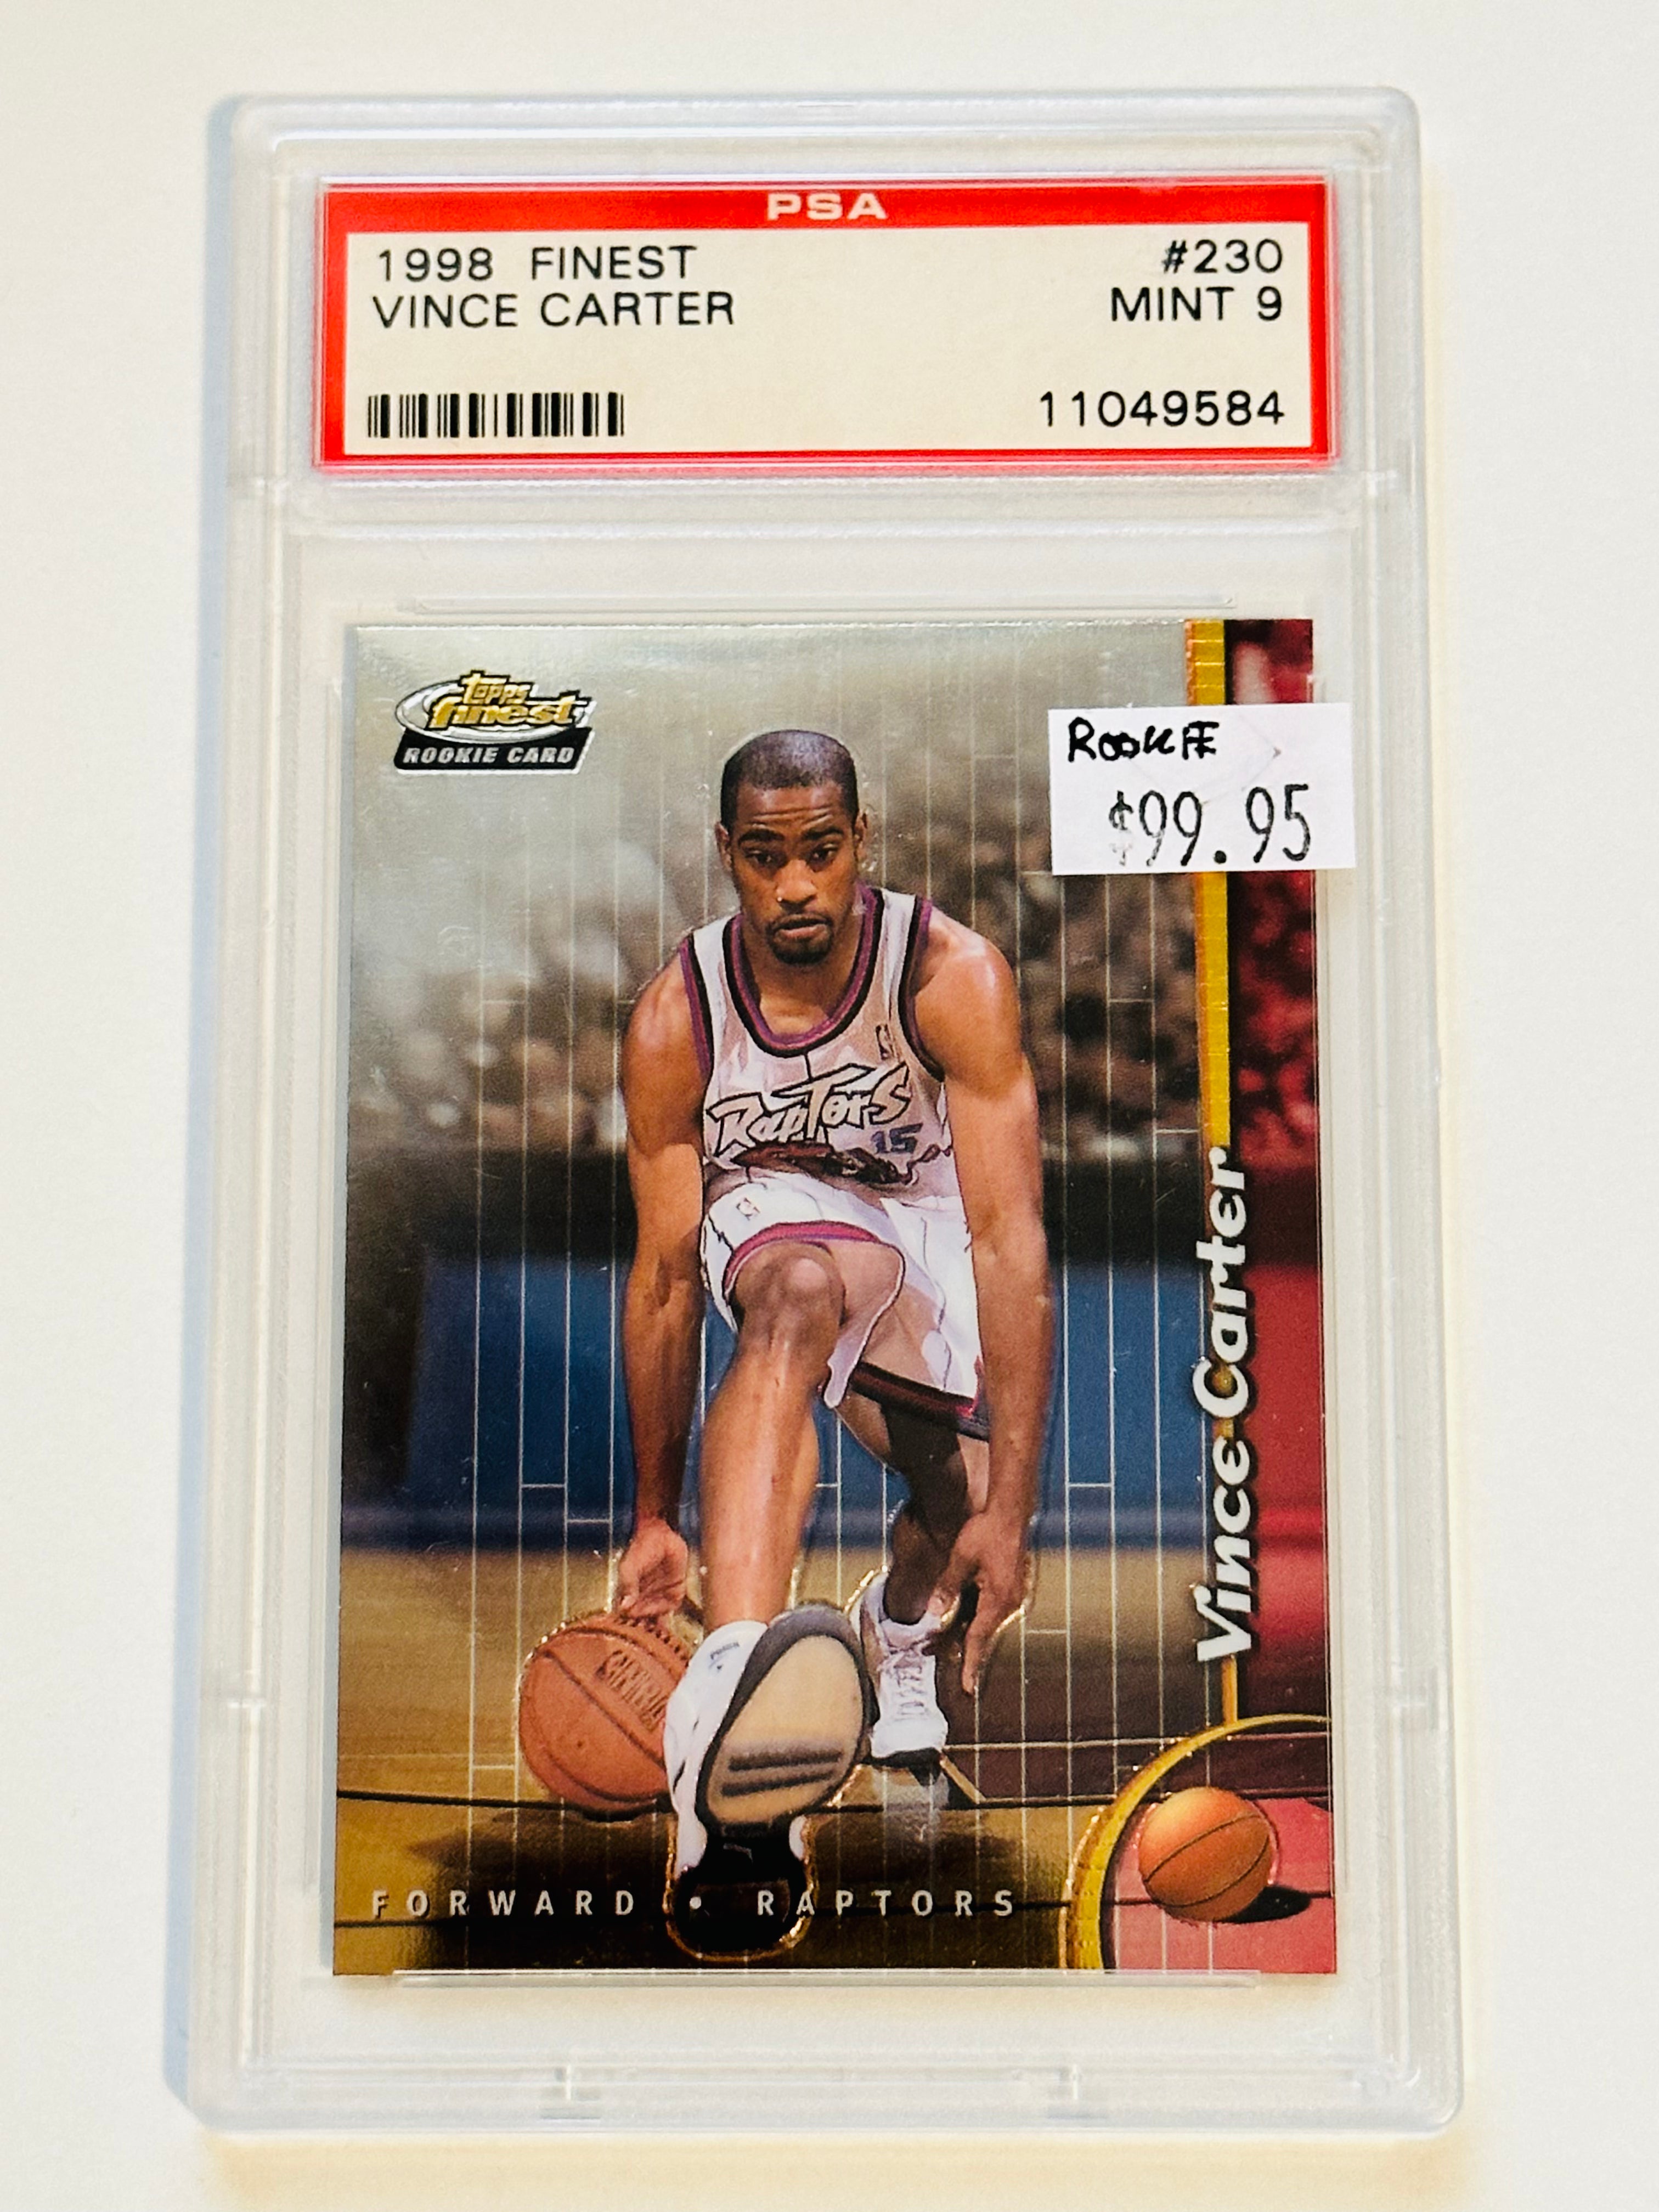 Vince Carter Toronto Raptors Topps Finest PSA basketball high grade rookie card 1998